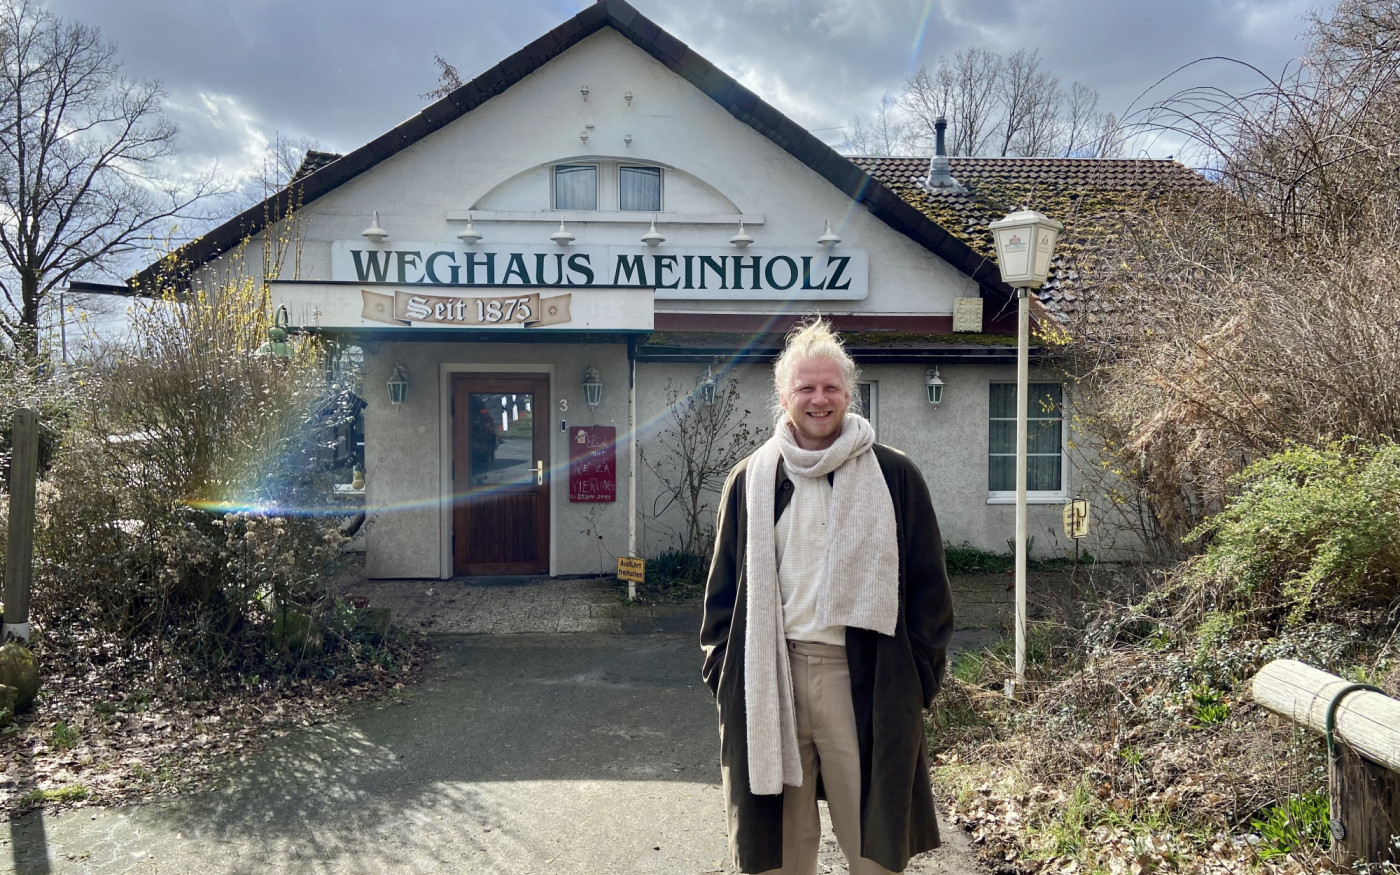 Eine Zeitreise im rätselhaften Kaninchenbau: Das Weghaus Meinholz an der südlichen Grenze des Landkreises Gifhorn darf man wirklich besuchen